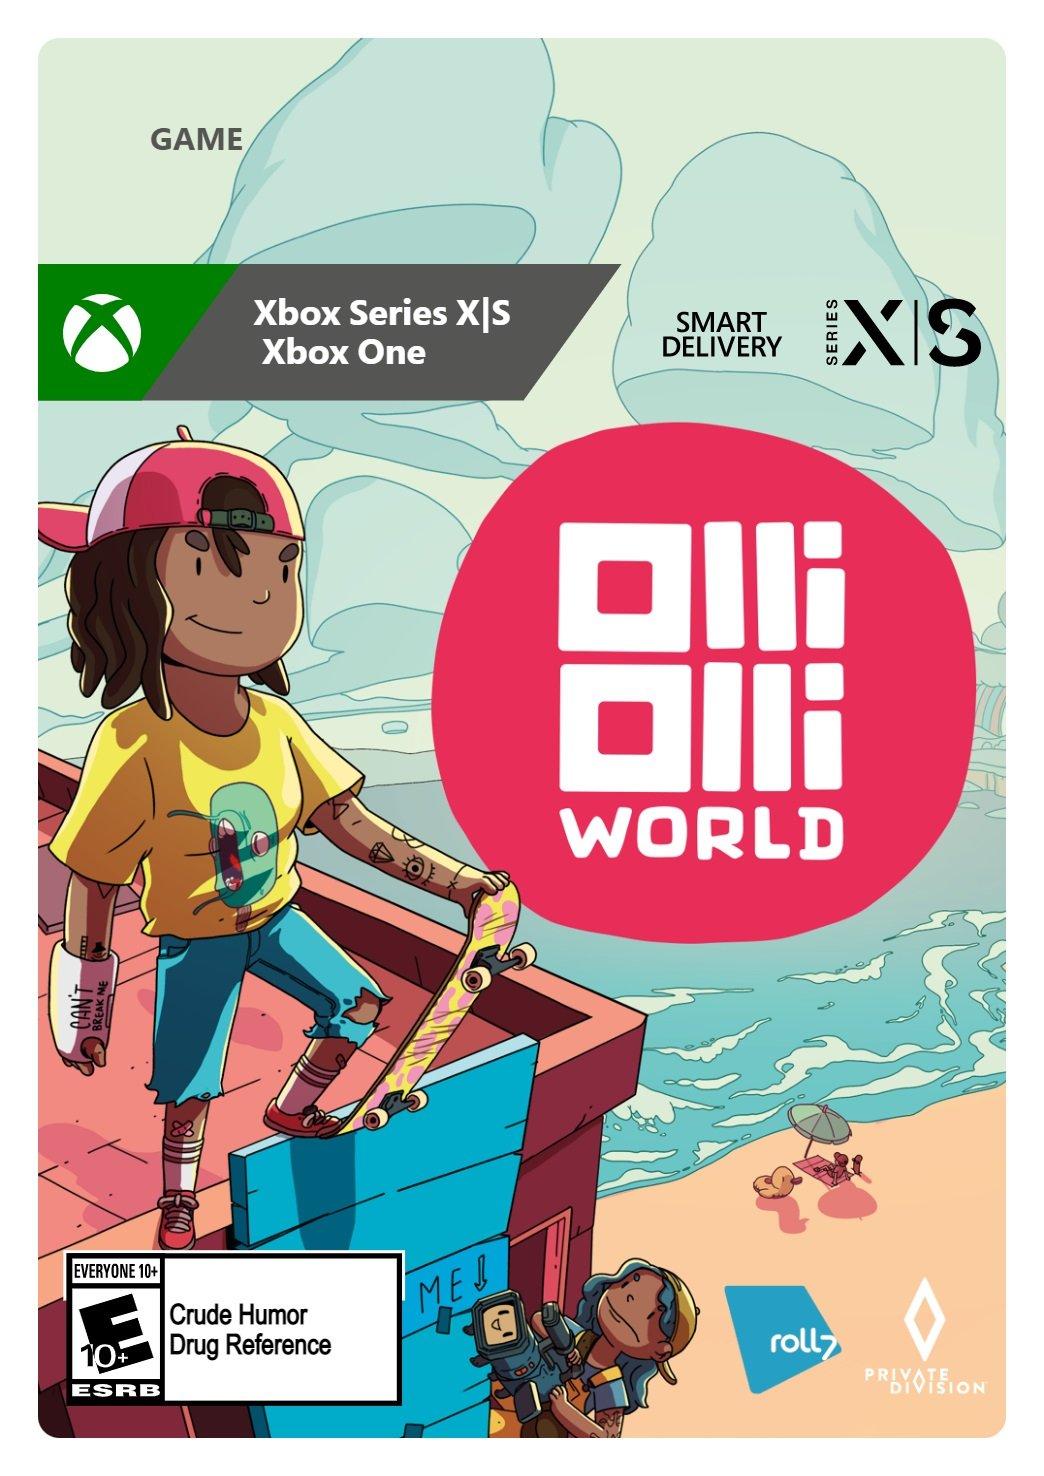 OlliOlli World - Xbox Series X